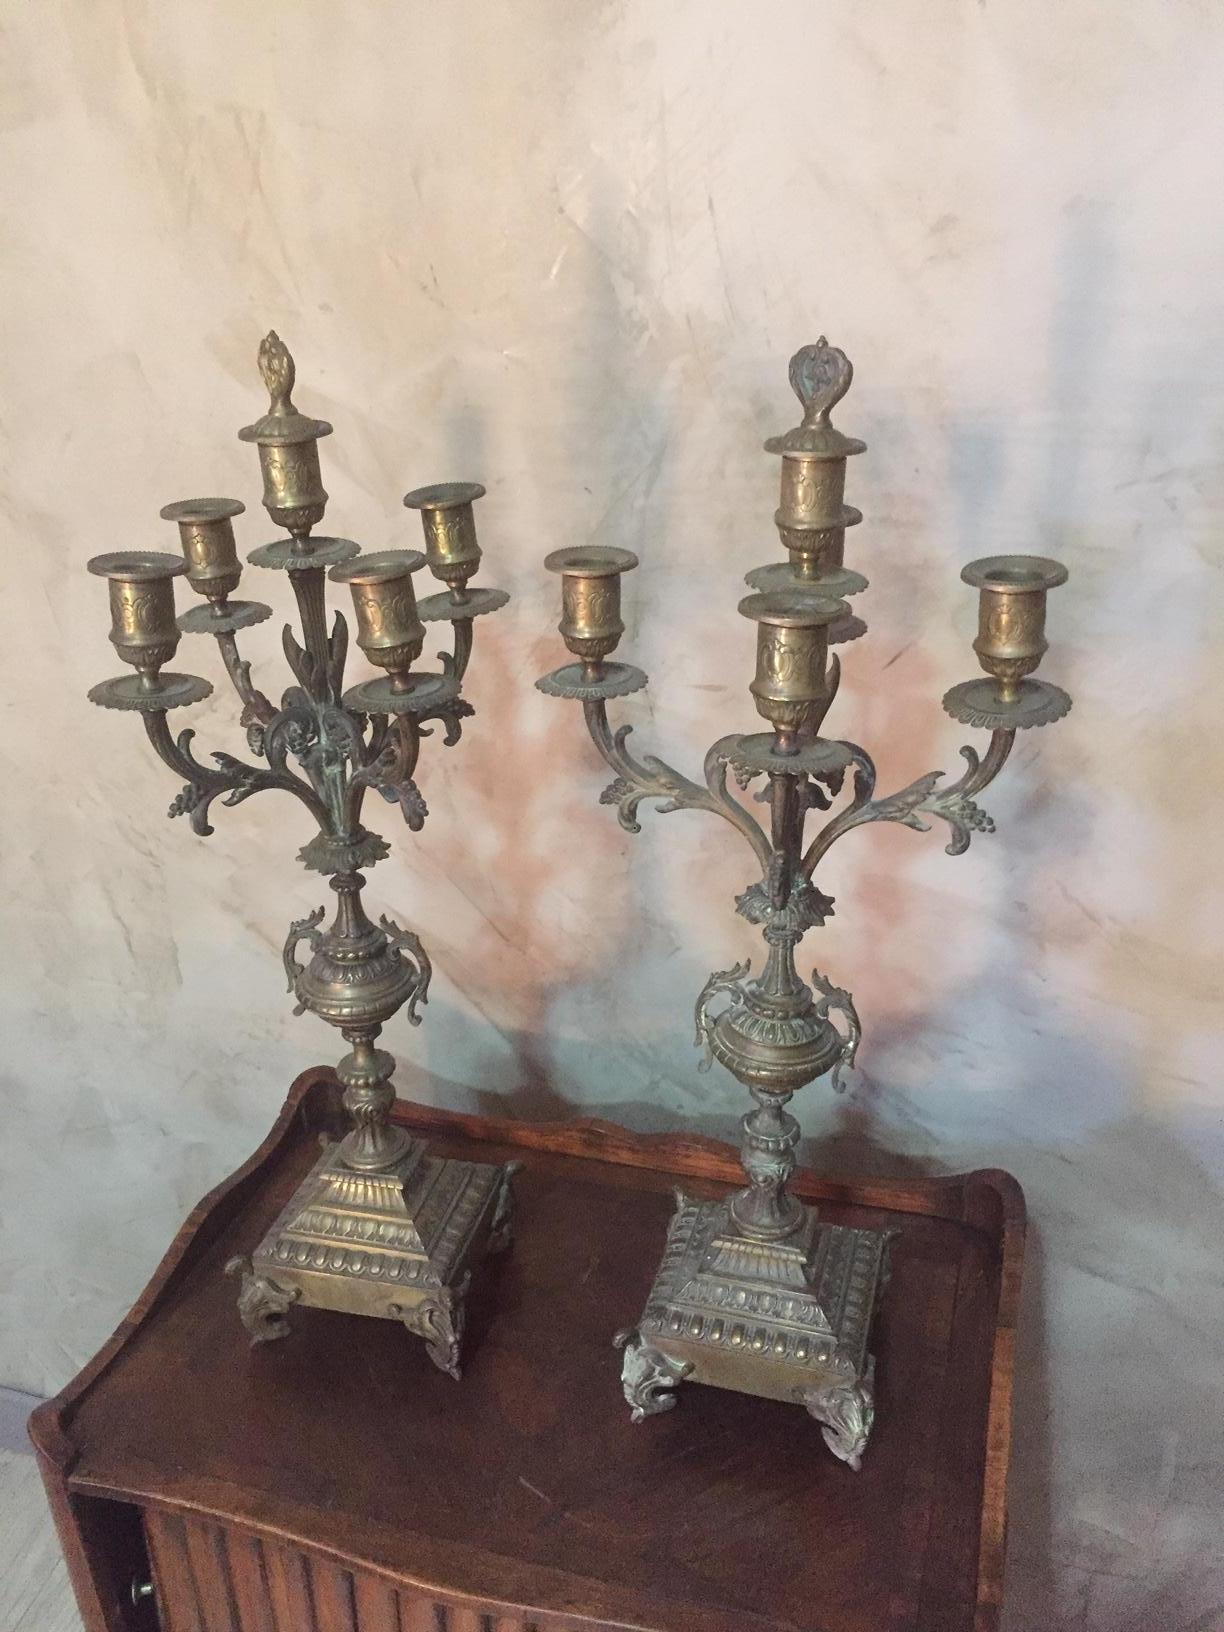 Très élégant candélabre en bronze français du début du 20e siècle.
Quatre ou cinq lampes avec un éteignoir au milieu.